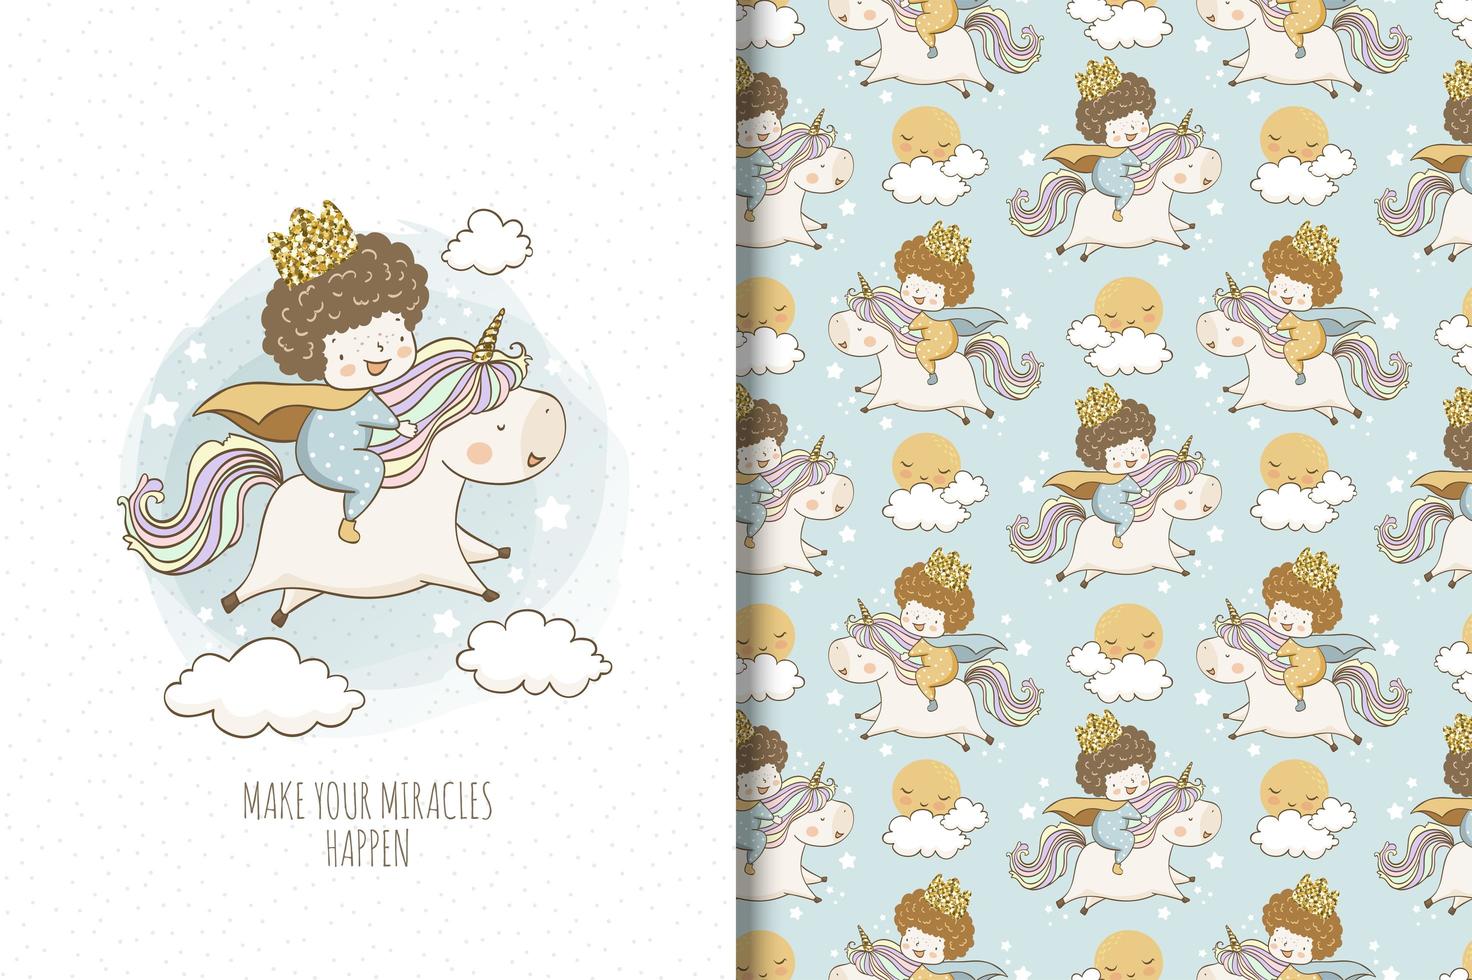 joli prince chevauche une licorne en dessin et motif de nuages vecteur